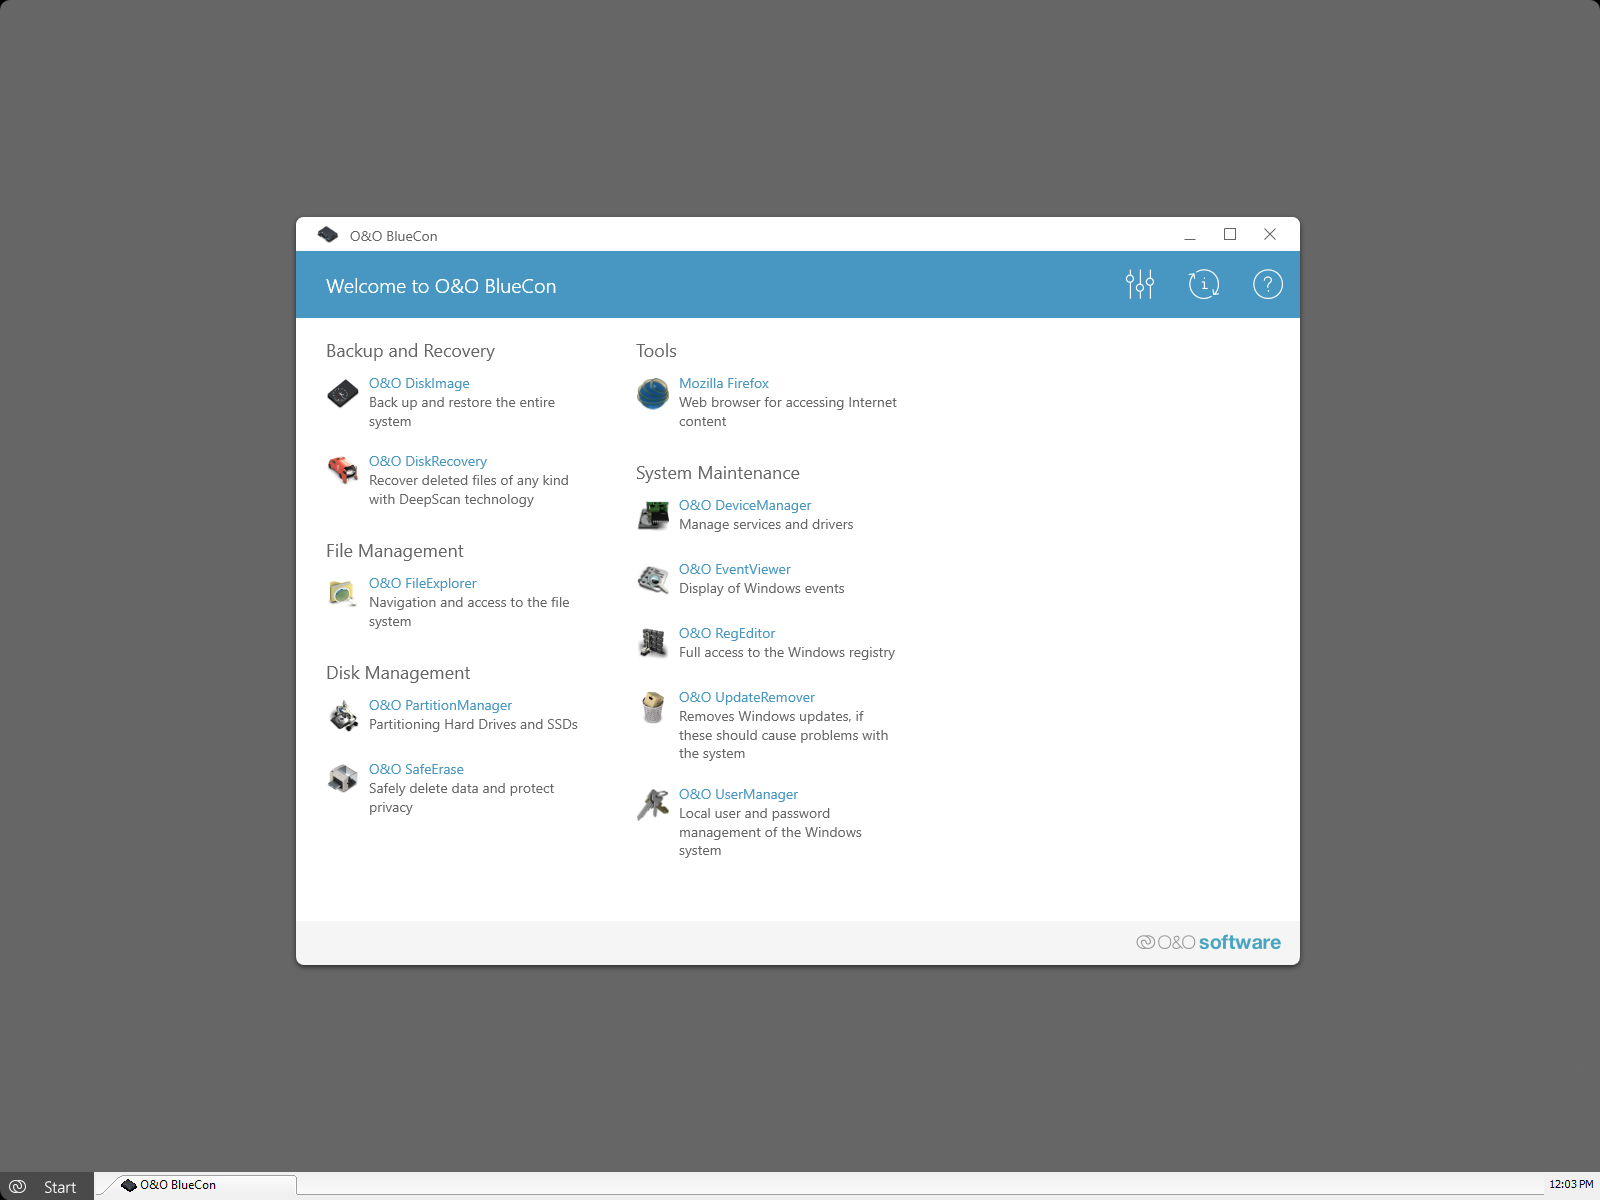 User interface of O&O BlueCon